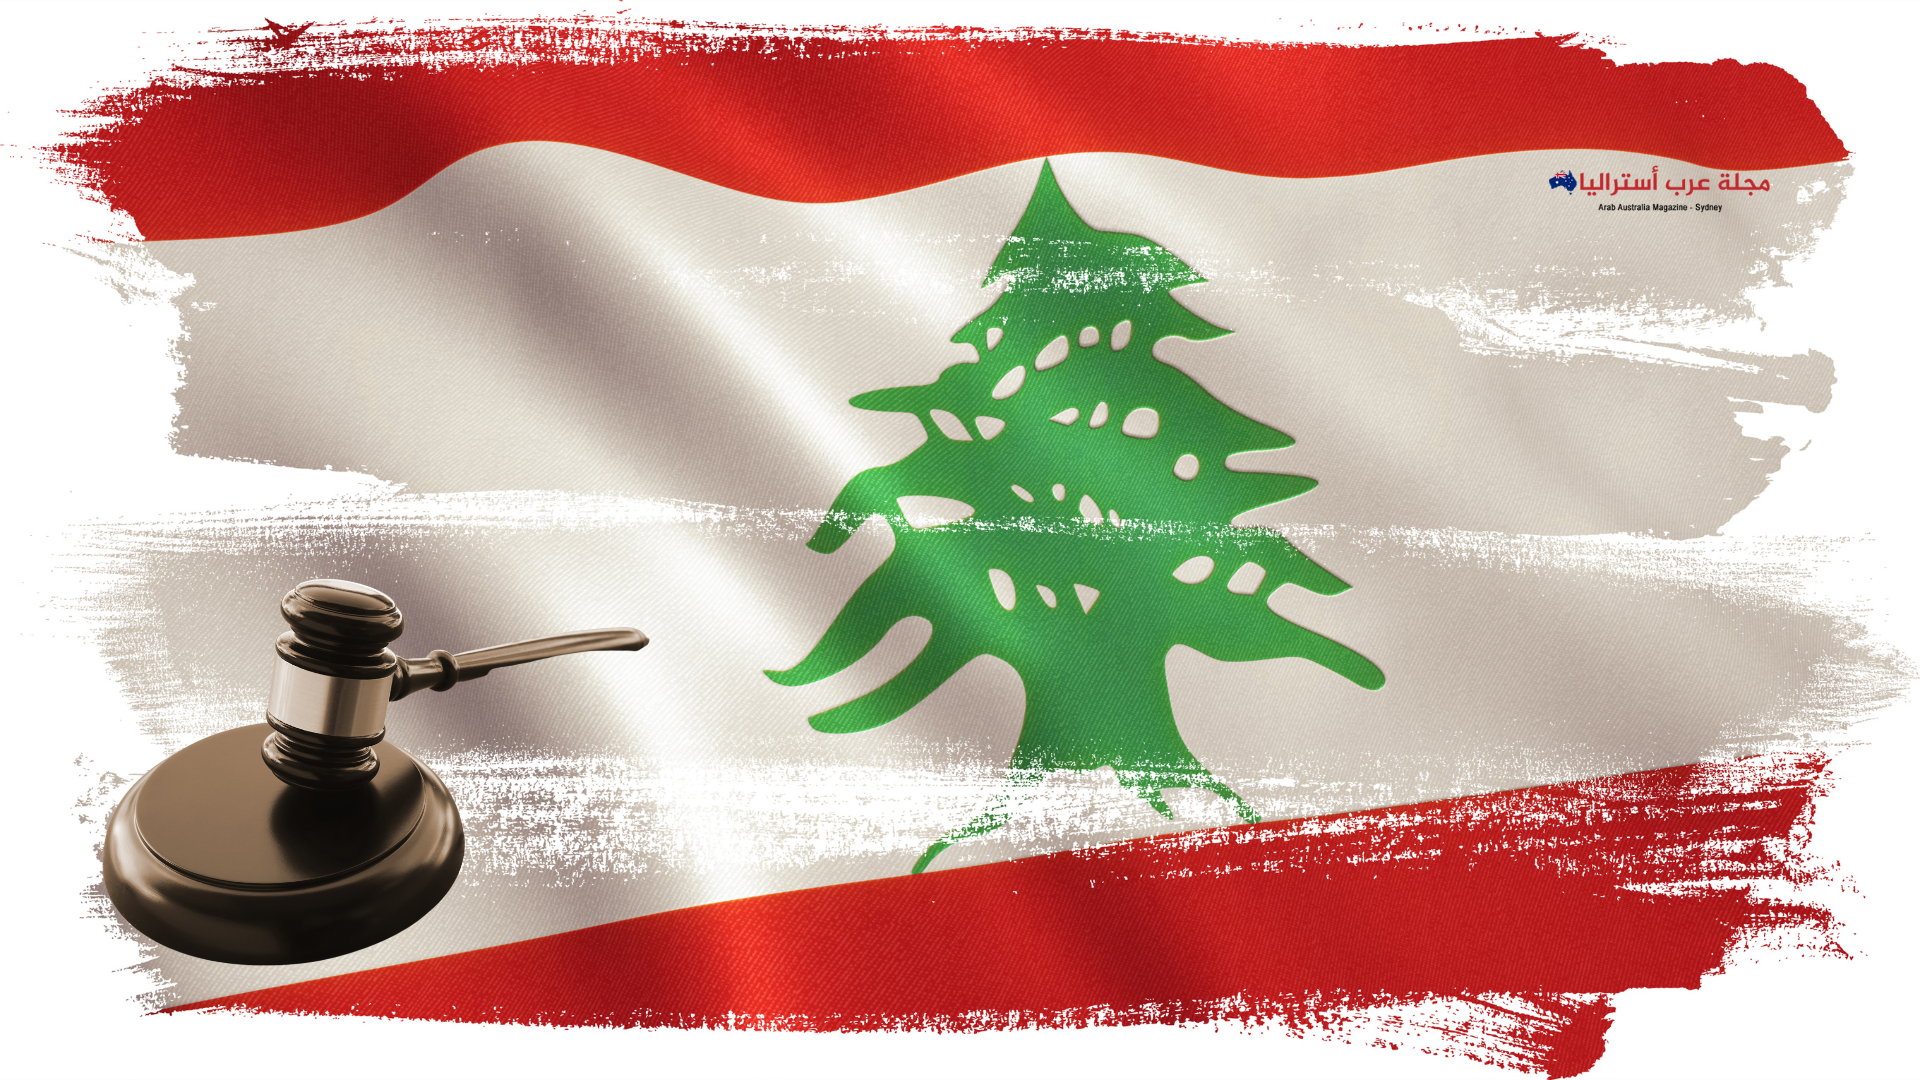 القاضي شحادة لا مسوغ قانوني لاقتراح تعيين حارس قضائي لمصرف لبنان